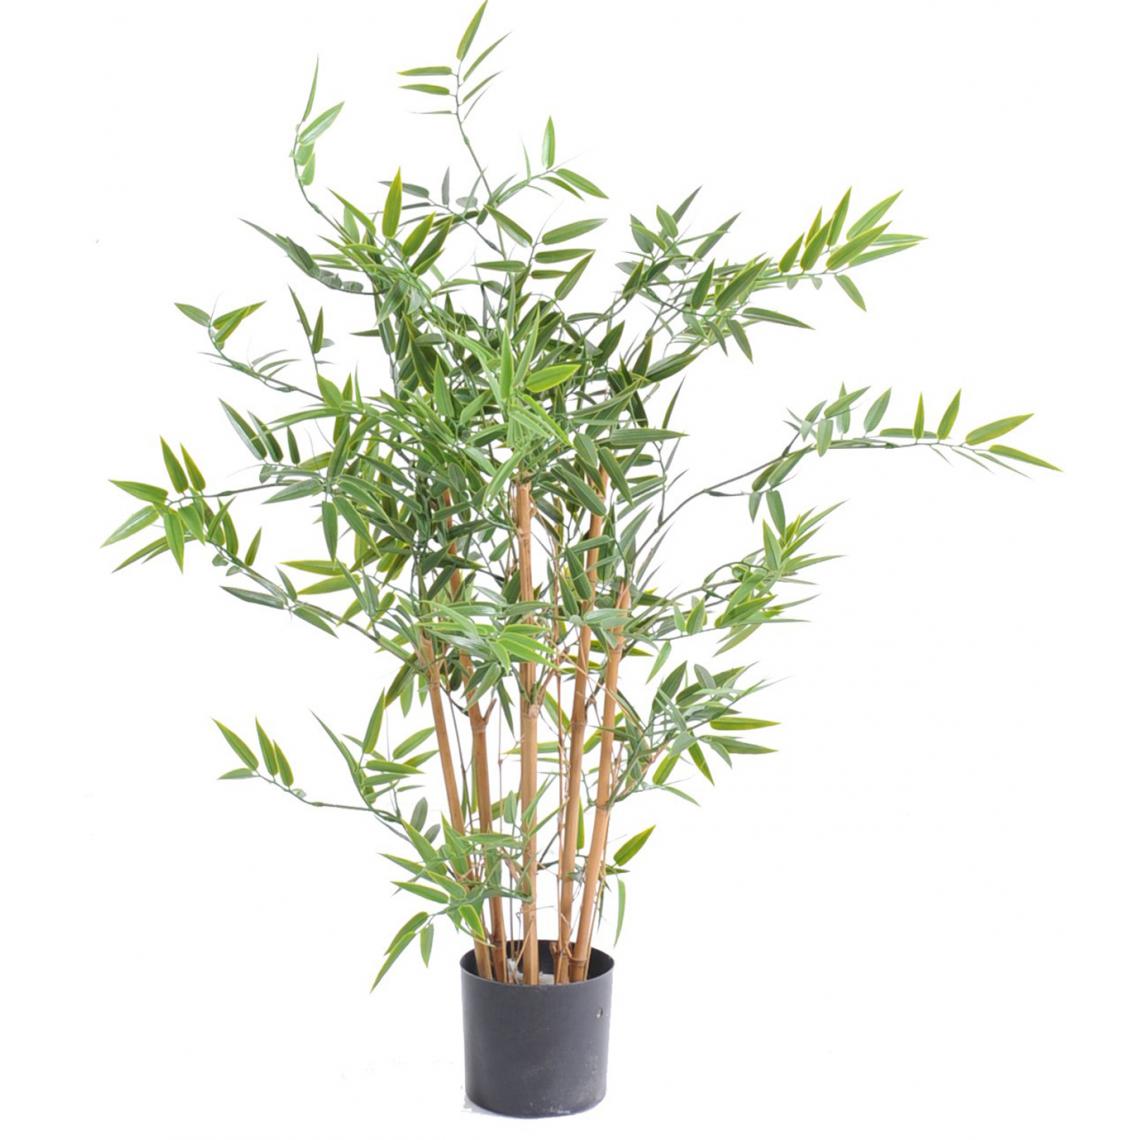 Pegane - Plante artificielle haute gamme Spécial extérieur en Bambou artificiel, couleur verte - Dim : 90 x 60 cm - Plantes et fleurs artificielles